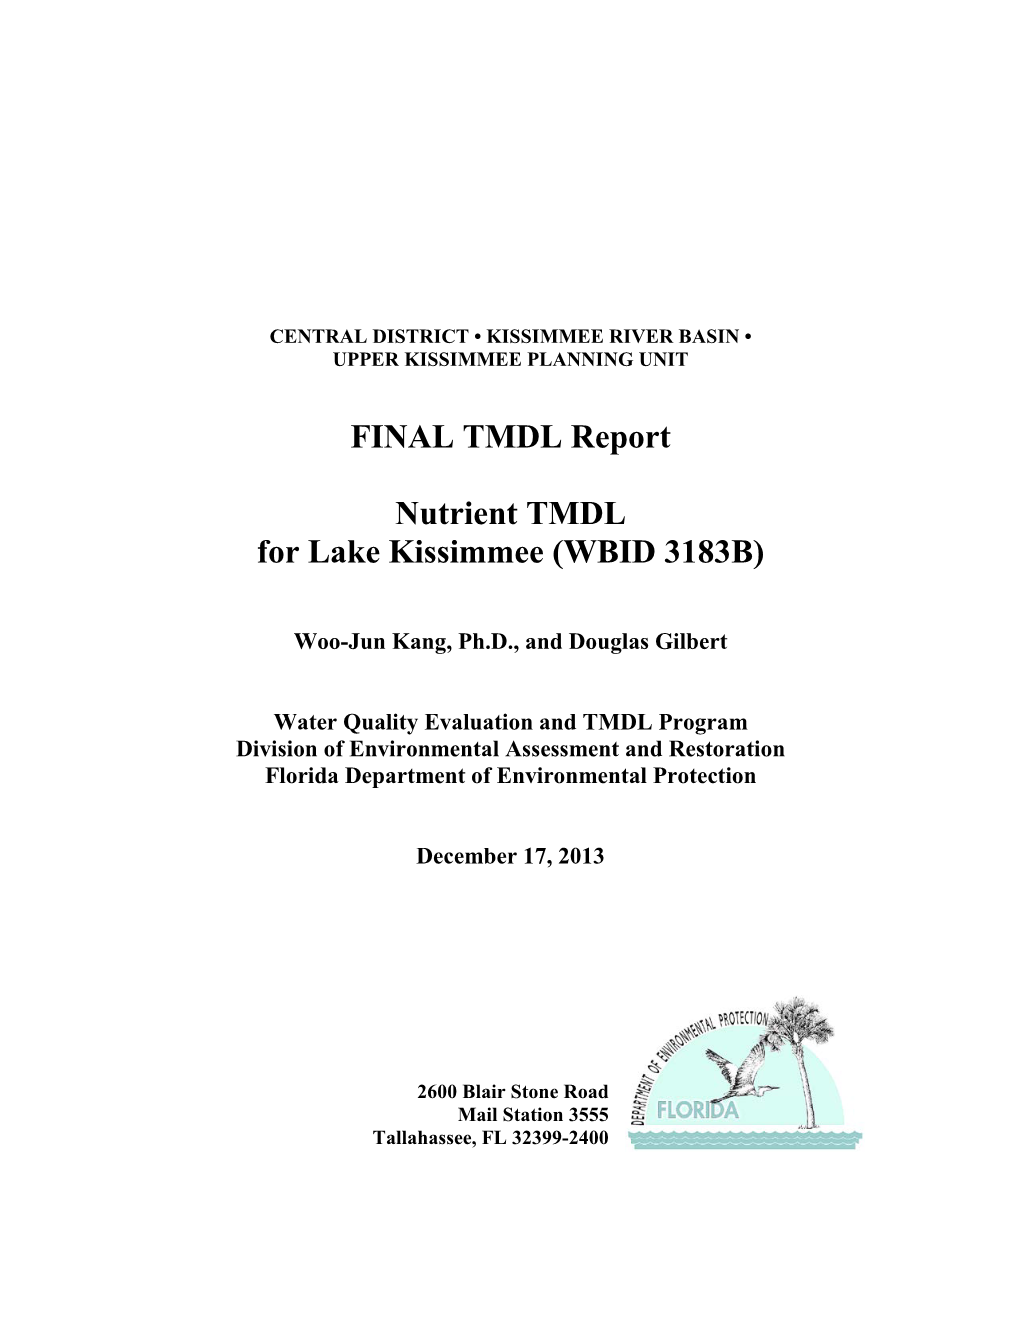 Lake Kissimmee (WBID 3183B) Nutrient TMDL